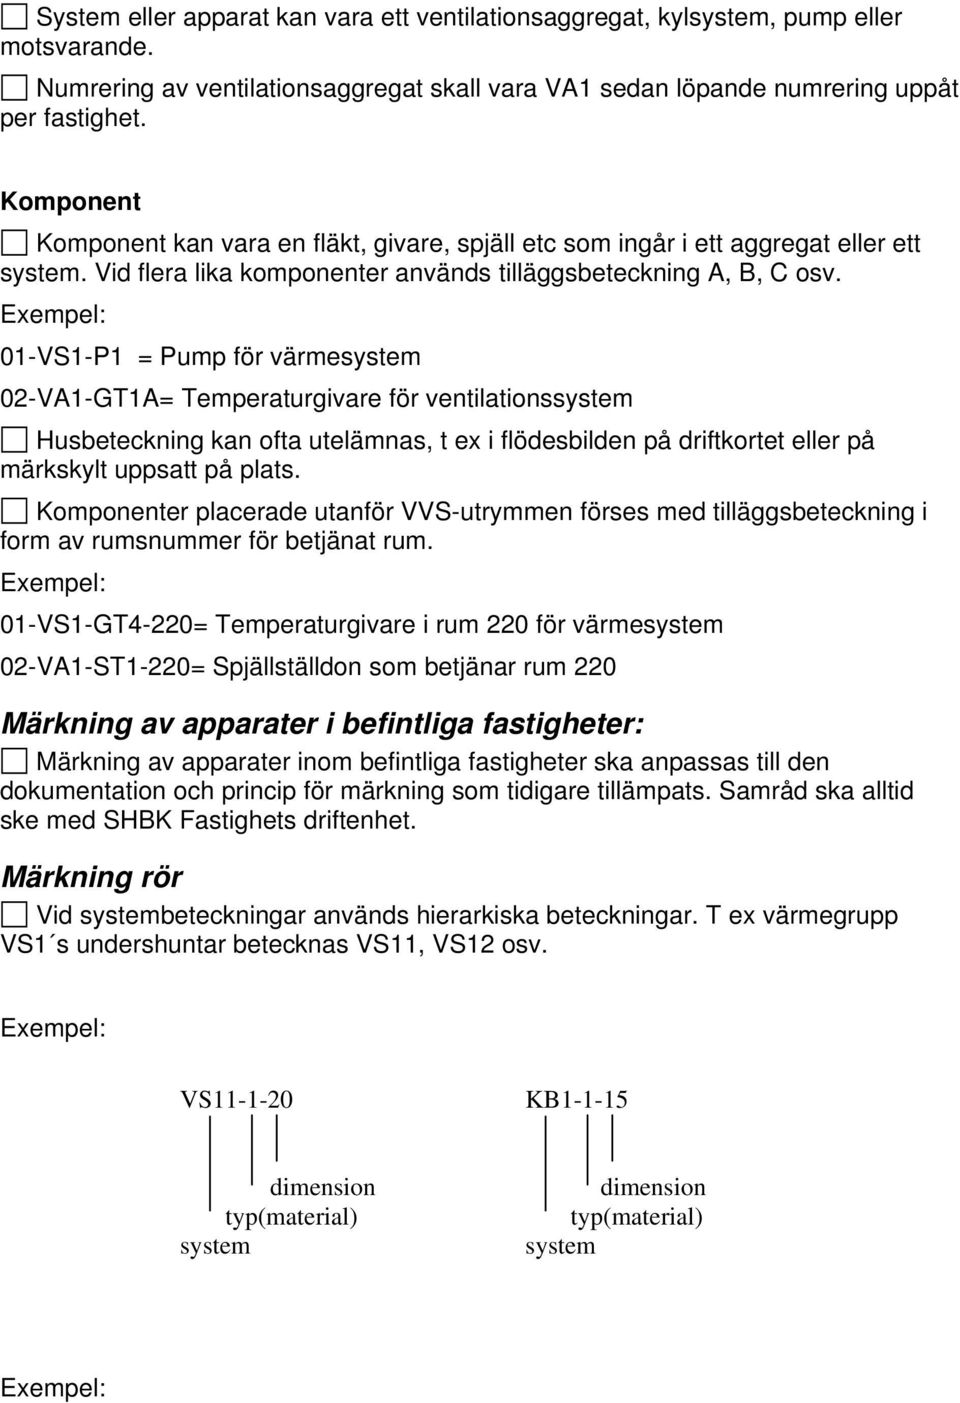 Exempel: 01-VS1-P1 = Pump för värmesystem 02-VA1-GT1A= Temperaturgivare för ventilationssystem Husbeteckning kan ofta utelämnas, t ex i flödesbilden på driftkortet eller på märkskylt uppsatt på plats.